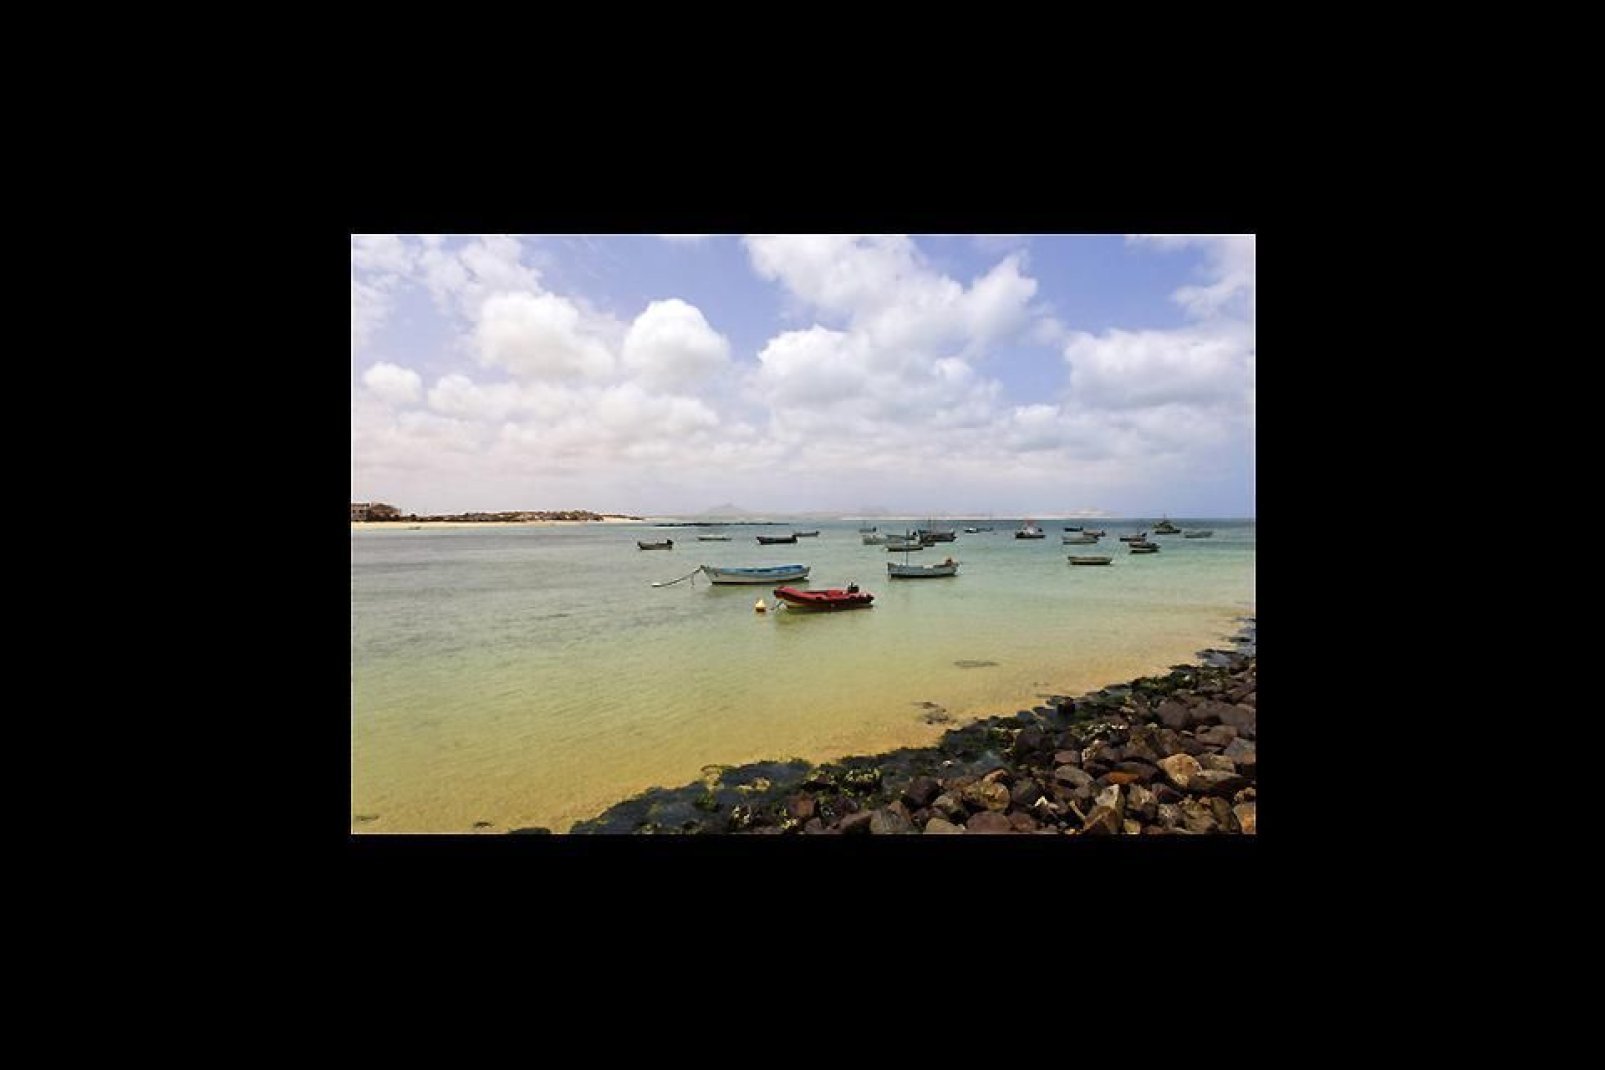 Situata in un'insenatura ben riparata dall'omonima isola, la città di Sal Rei è prima di tutto un porto commerciale e peschereccio.